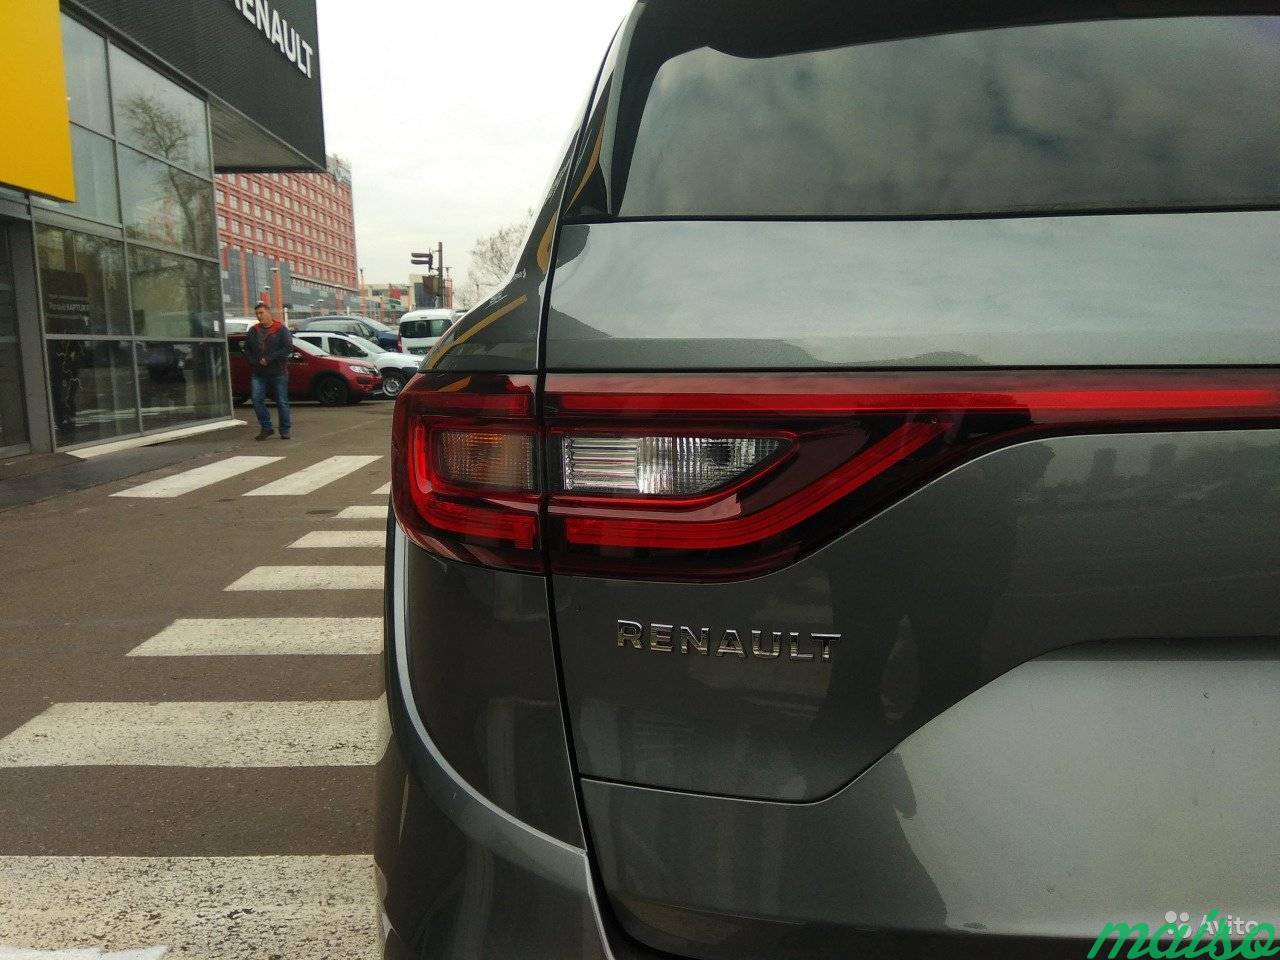 Renault Koleos 2.0 AT, 2018, внедорожник в Санкт-Петербурге. Фото 12